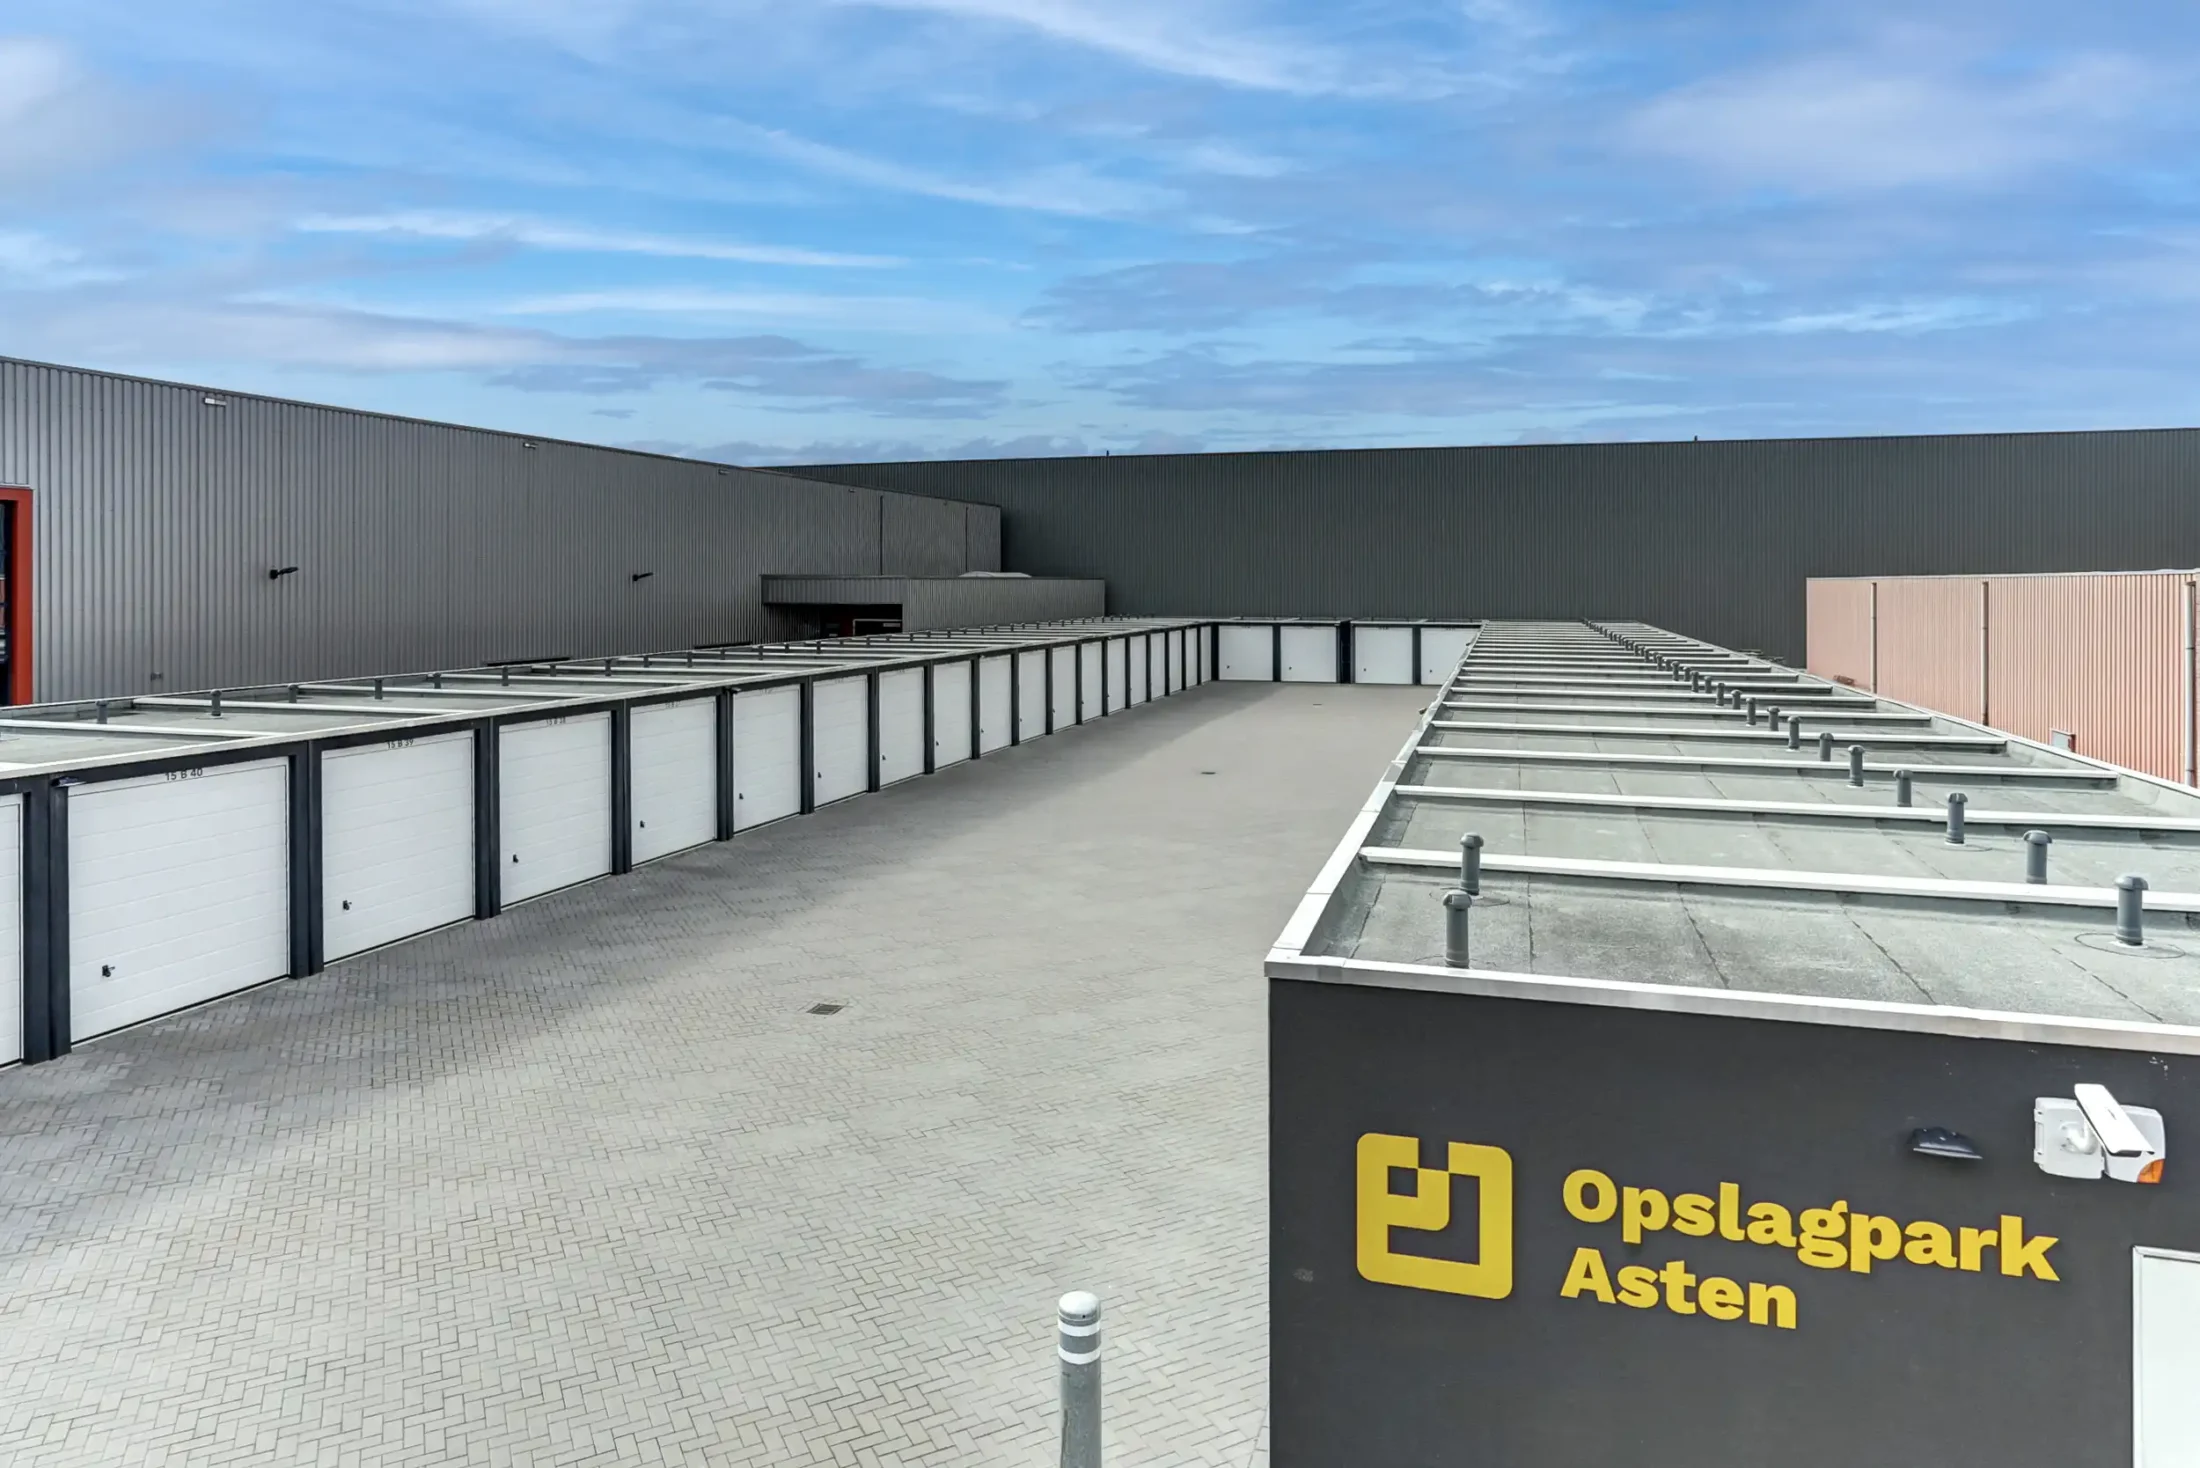 Opslagruimte en garageboxen Asten Noord-Brabant Opslagpark